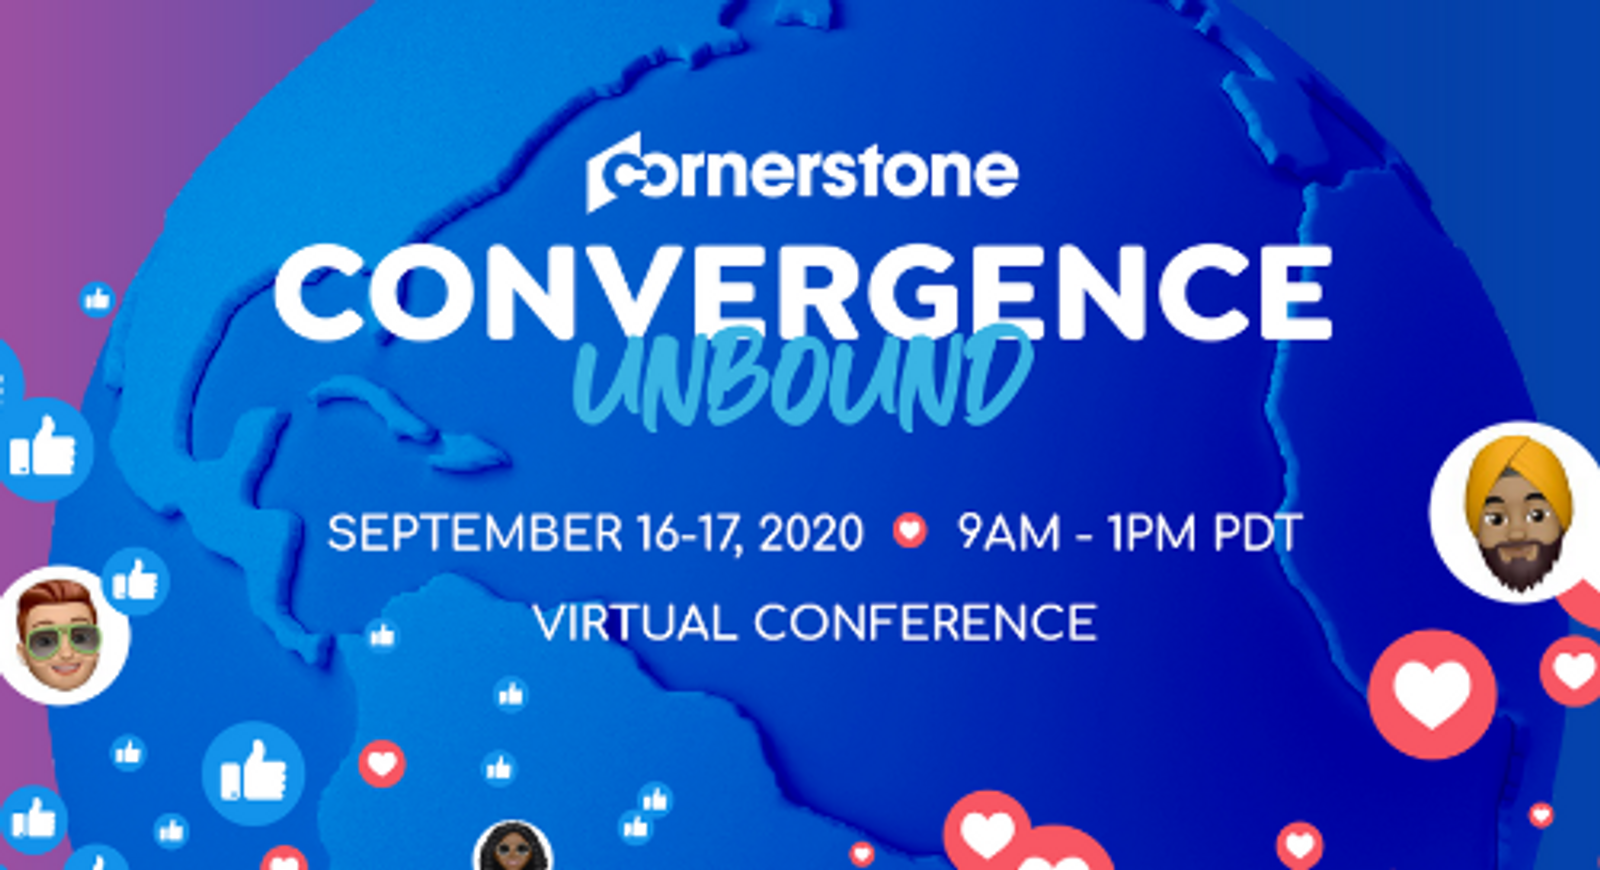 Únete a nosotros para "Cornerstone Convergence Unbound": ¡Nuestro nuevo y virtual Convergence!